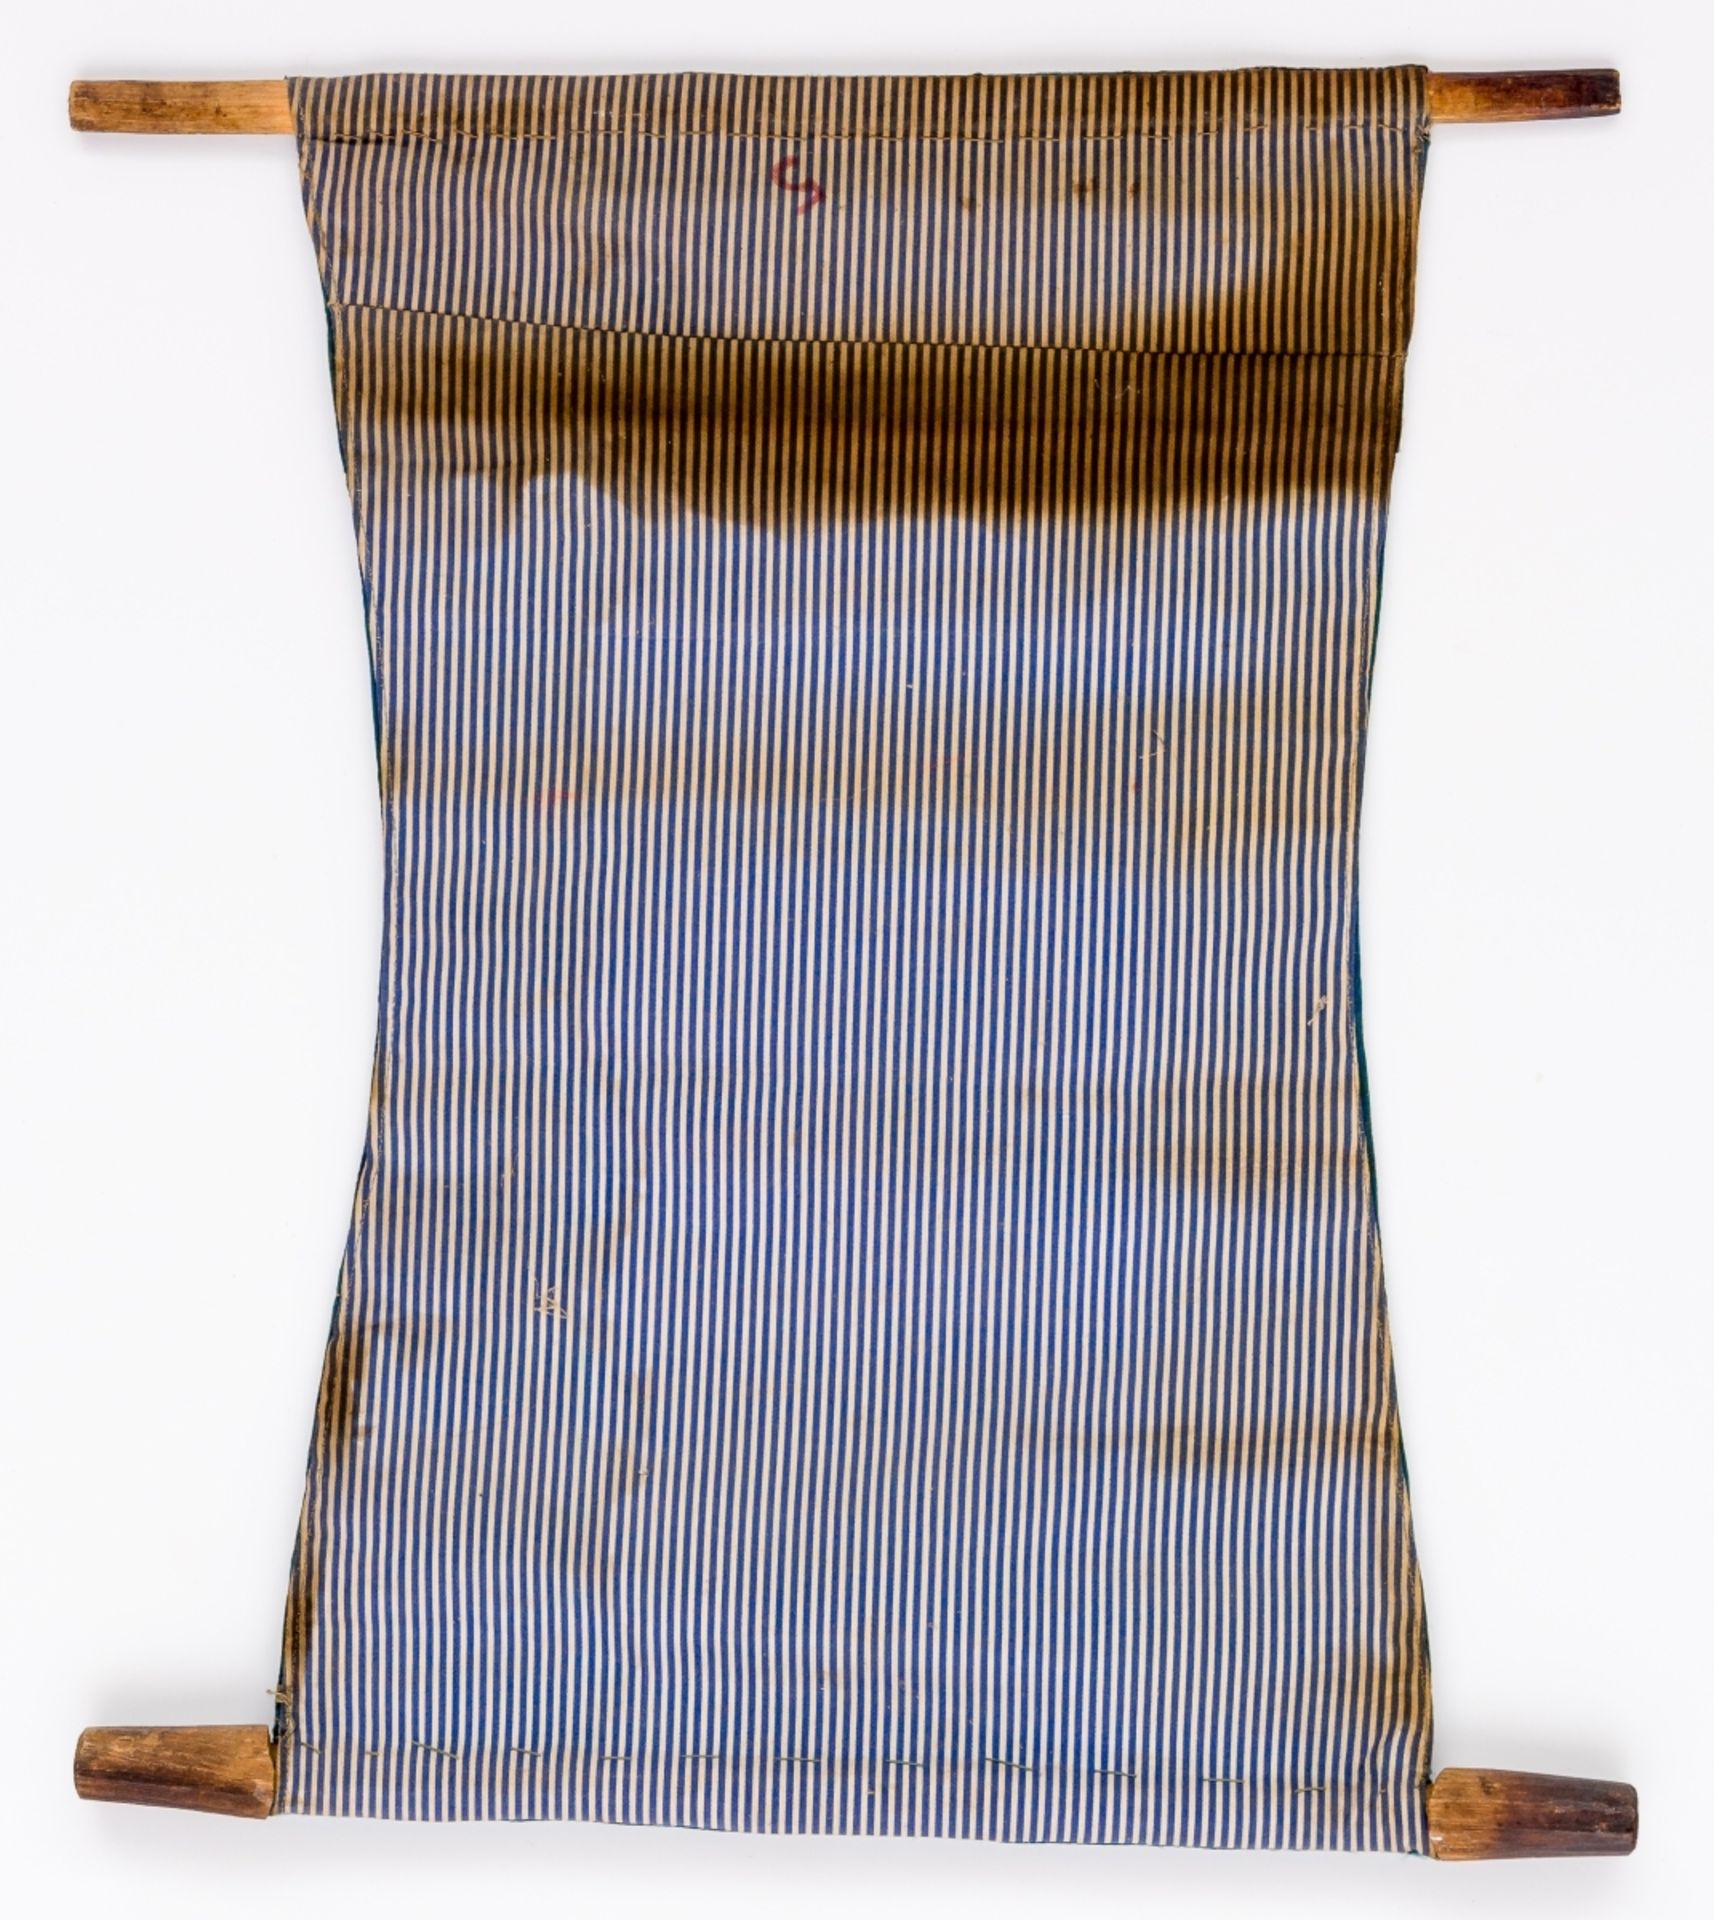 KLEINE THANGKA MIT BUDDHISTISCHEM HEILIGENMongolei, wohl um 190041 x 36 cm, Bild: 19, 5 x 13 - Bild 3 aus 3